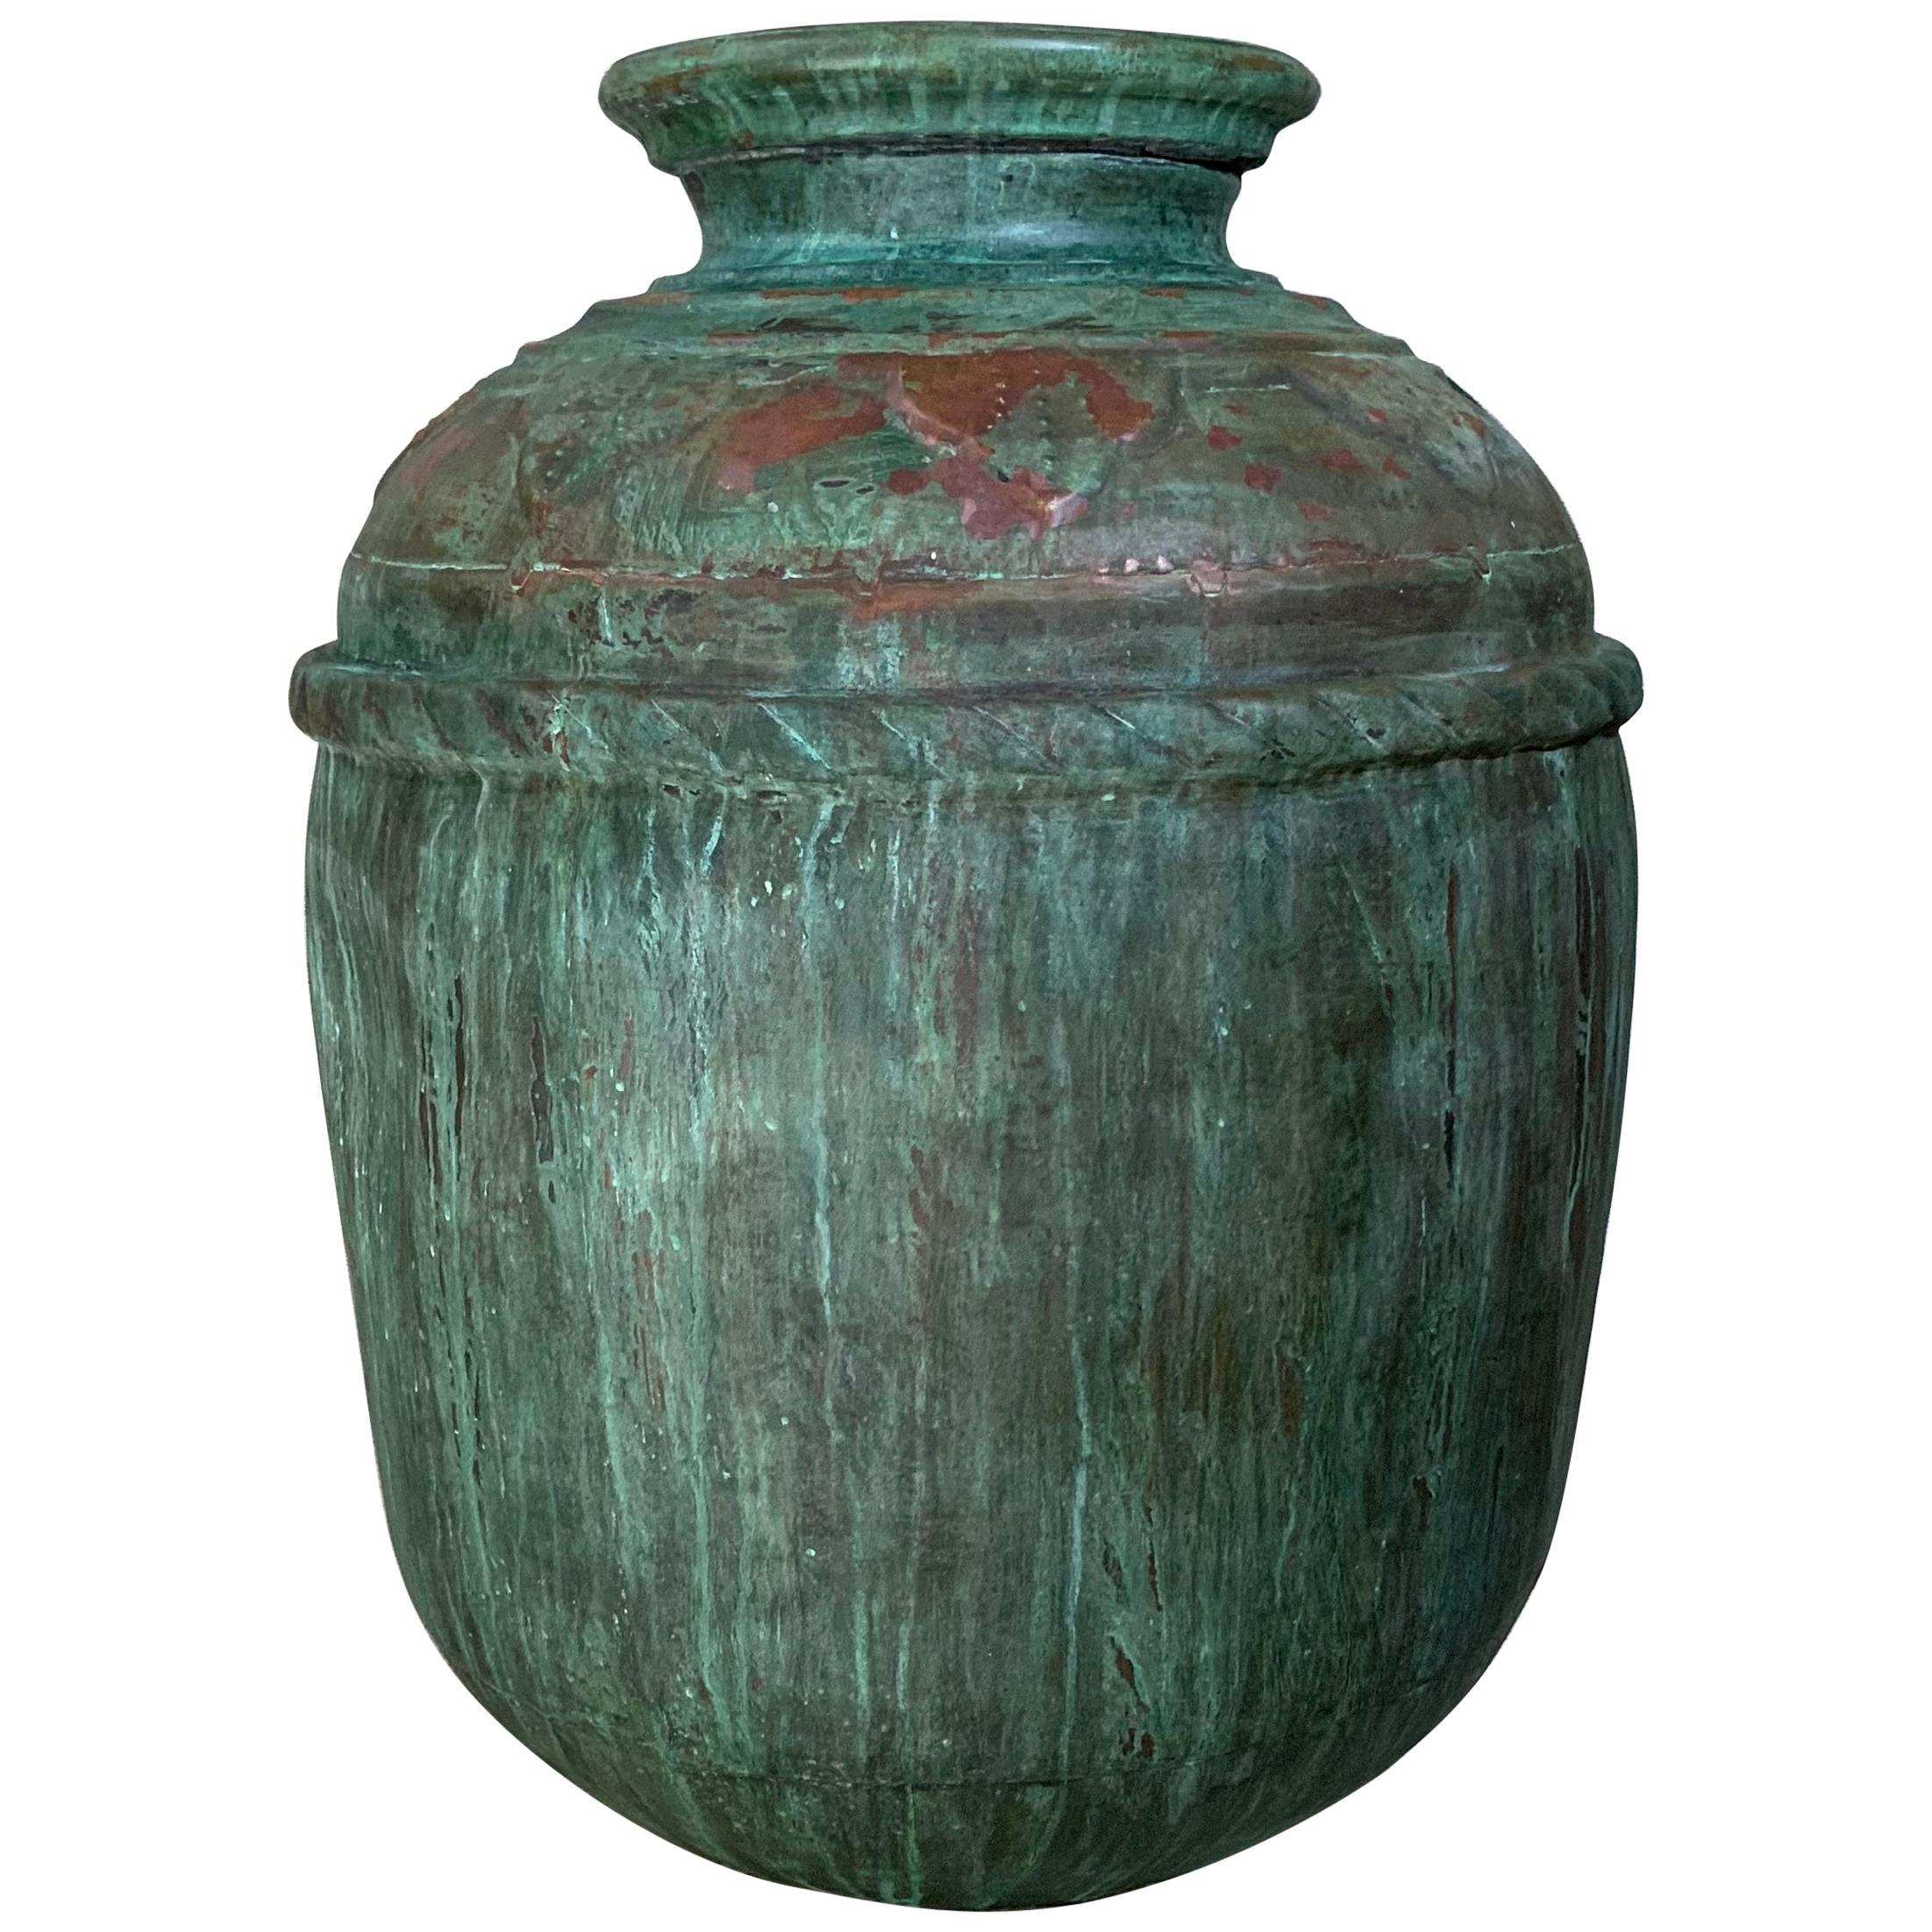 Single Vintage Copper Vase